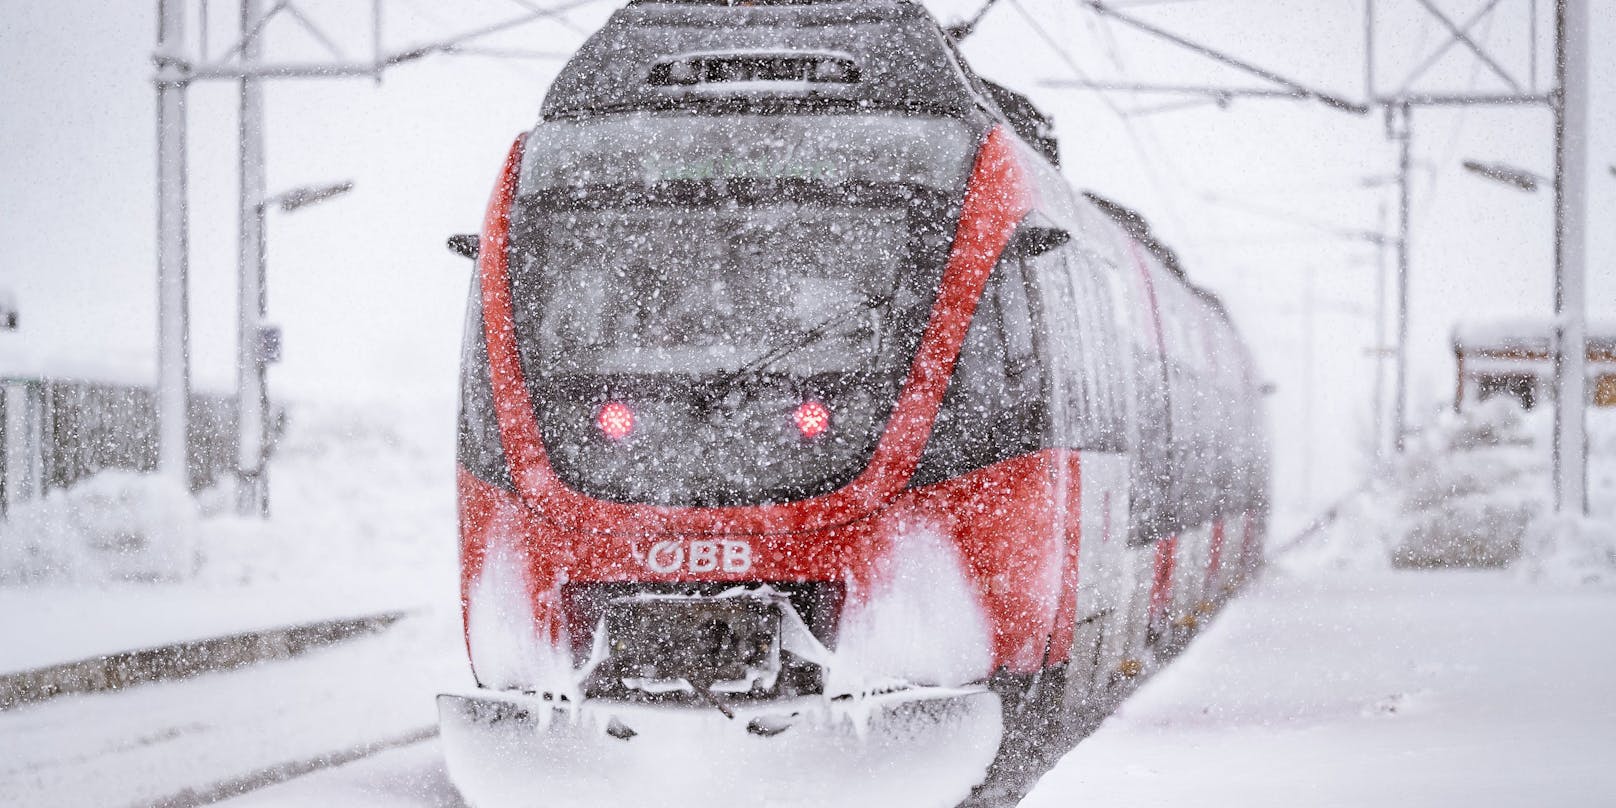 Ein Zug der ÖBB im starkem Schneefall, aufgenommen am 09. Jänner 2019 in Saalfelden.